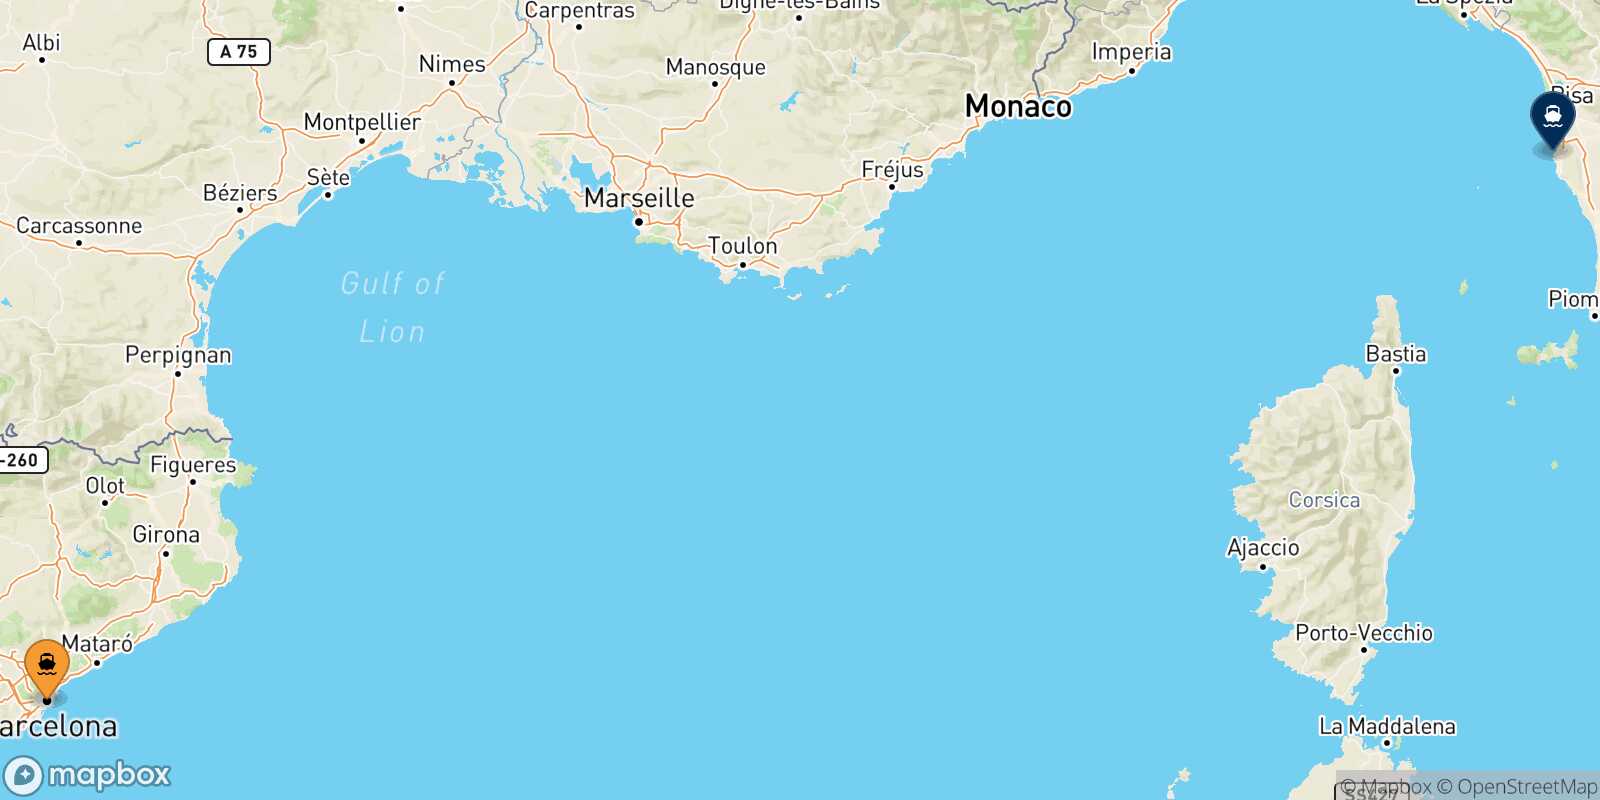 Mappa della rotta Barcellona Livorno